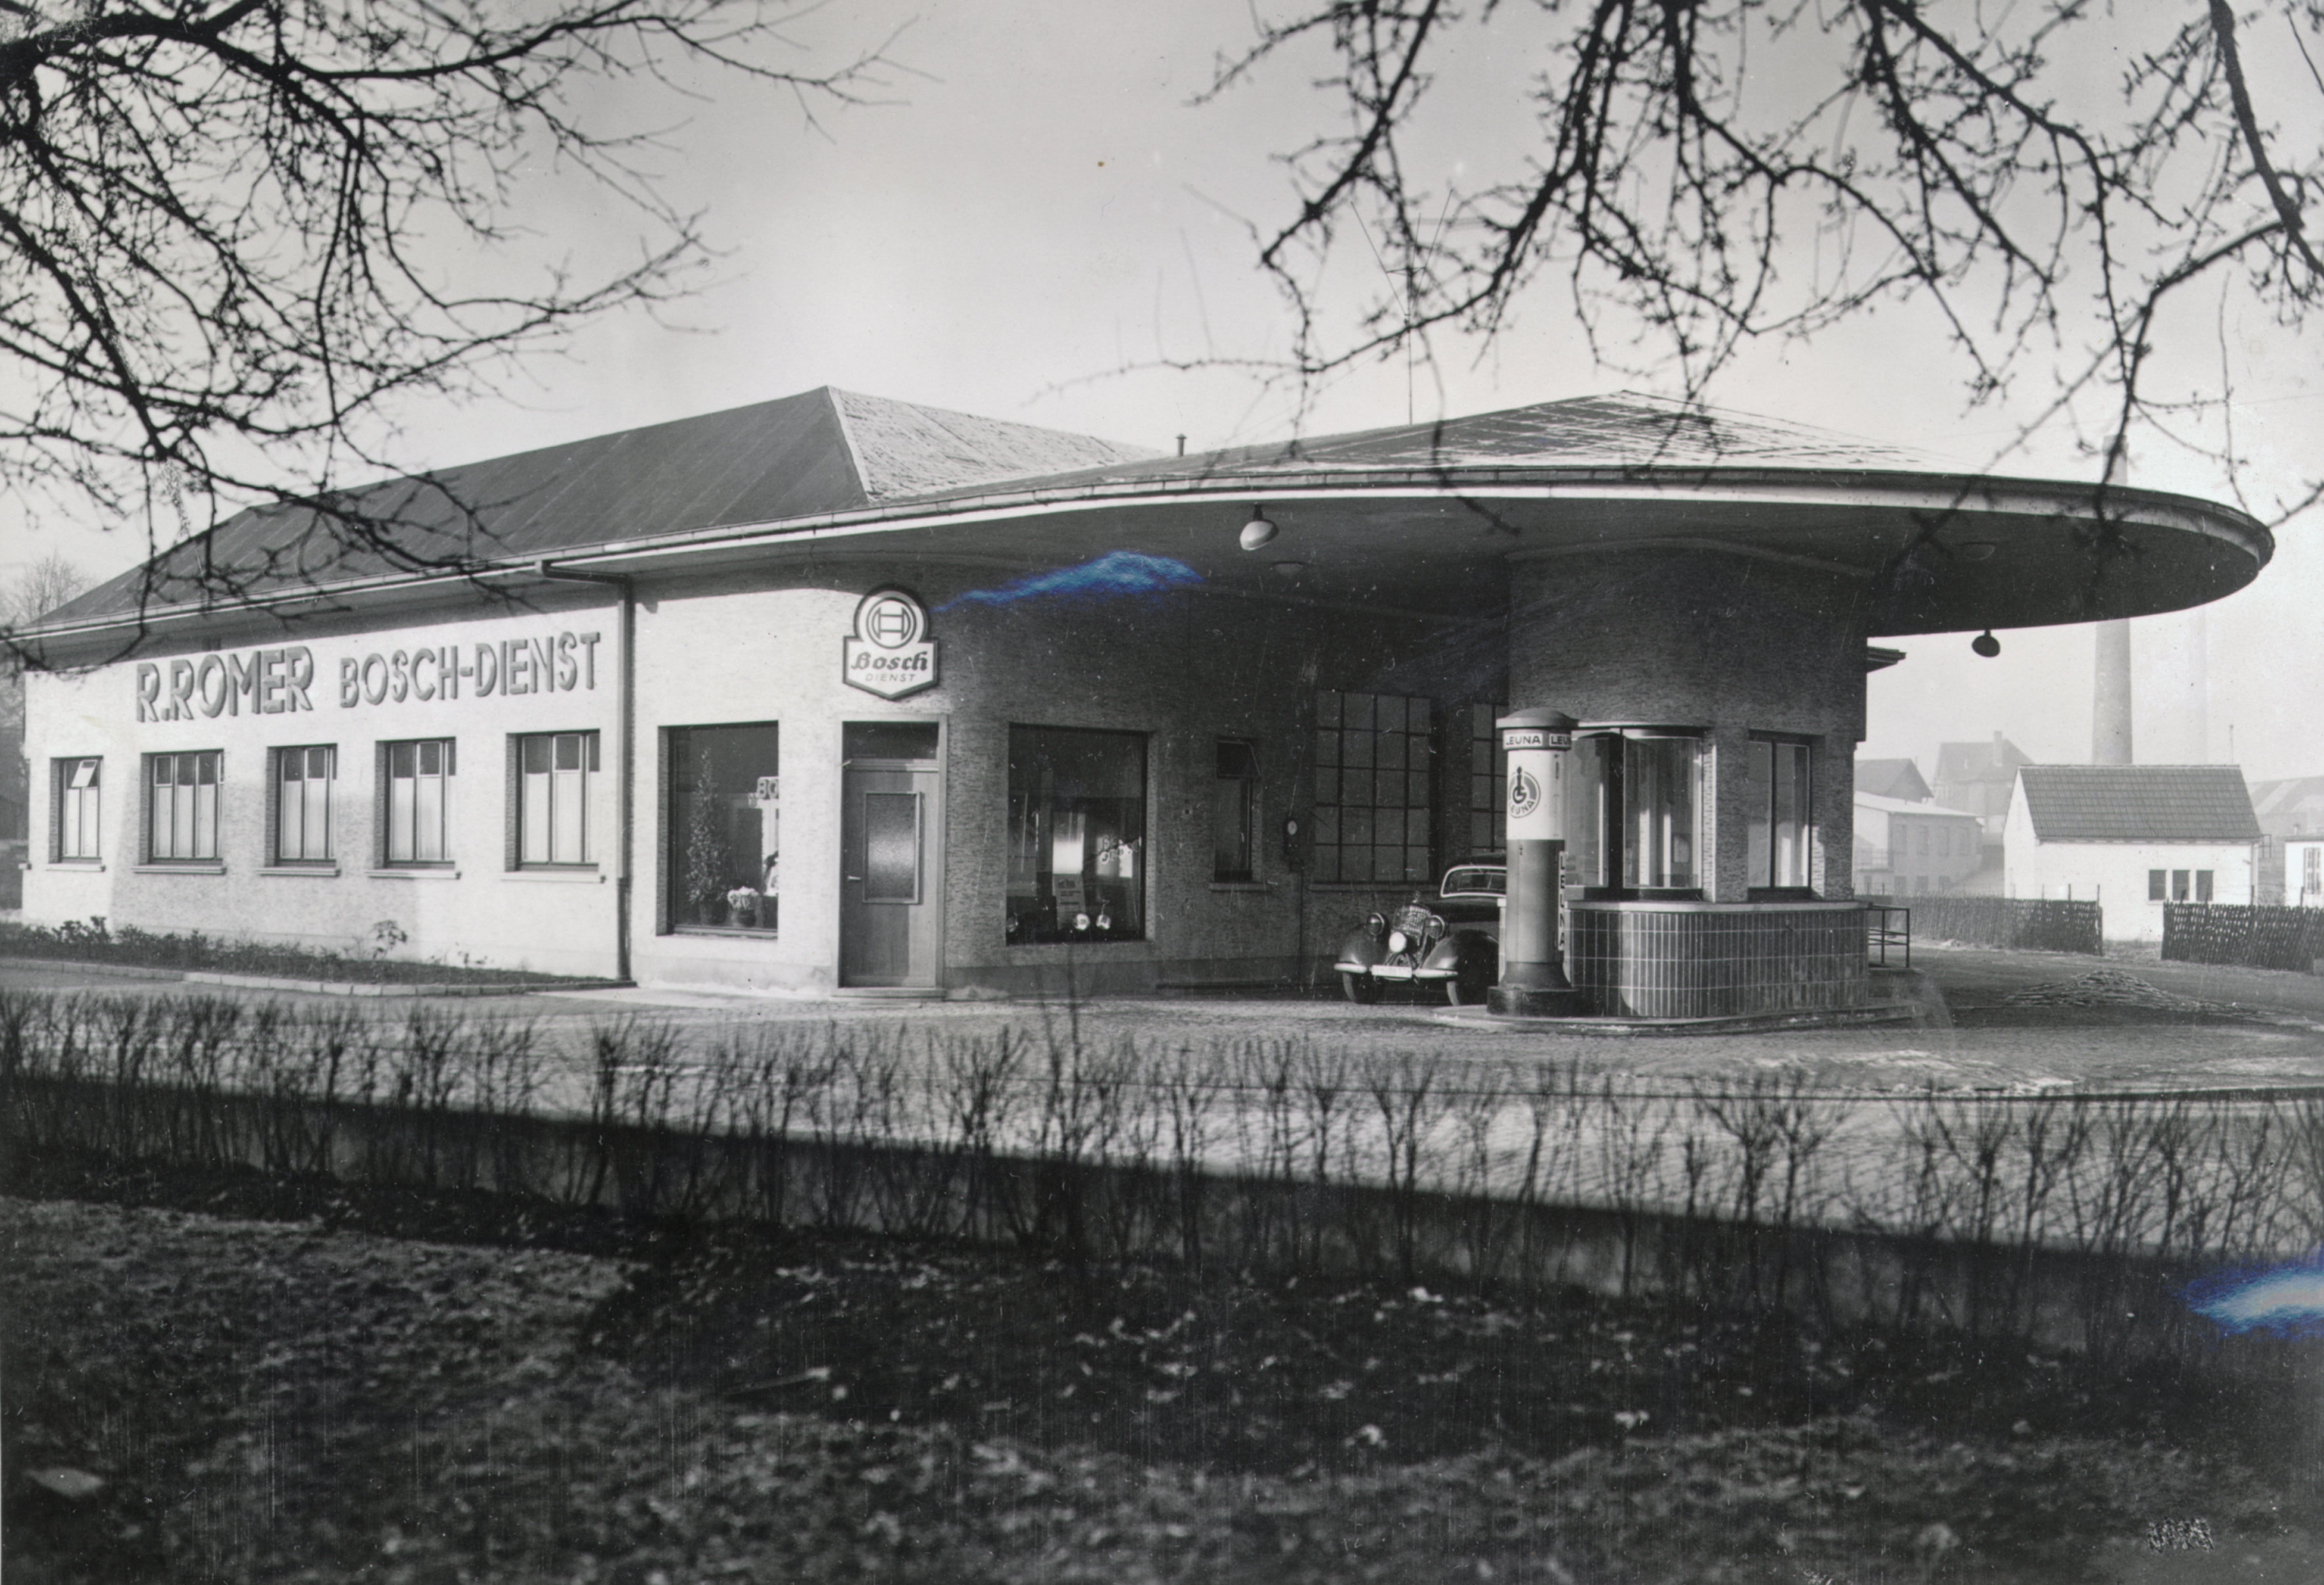 La prima officina di installazione e riparazione Bosch ha aperto i battenti ad Amburgo nel 1921 costituendo quella che oggi è la più grande rete di officine indipendenti al mondo